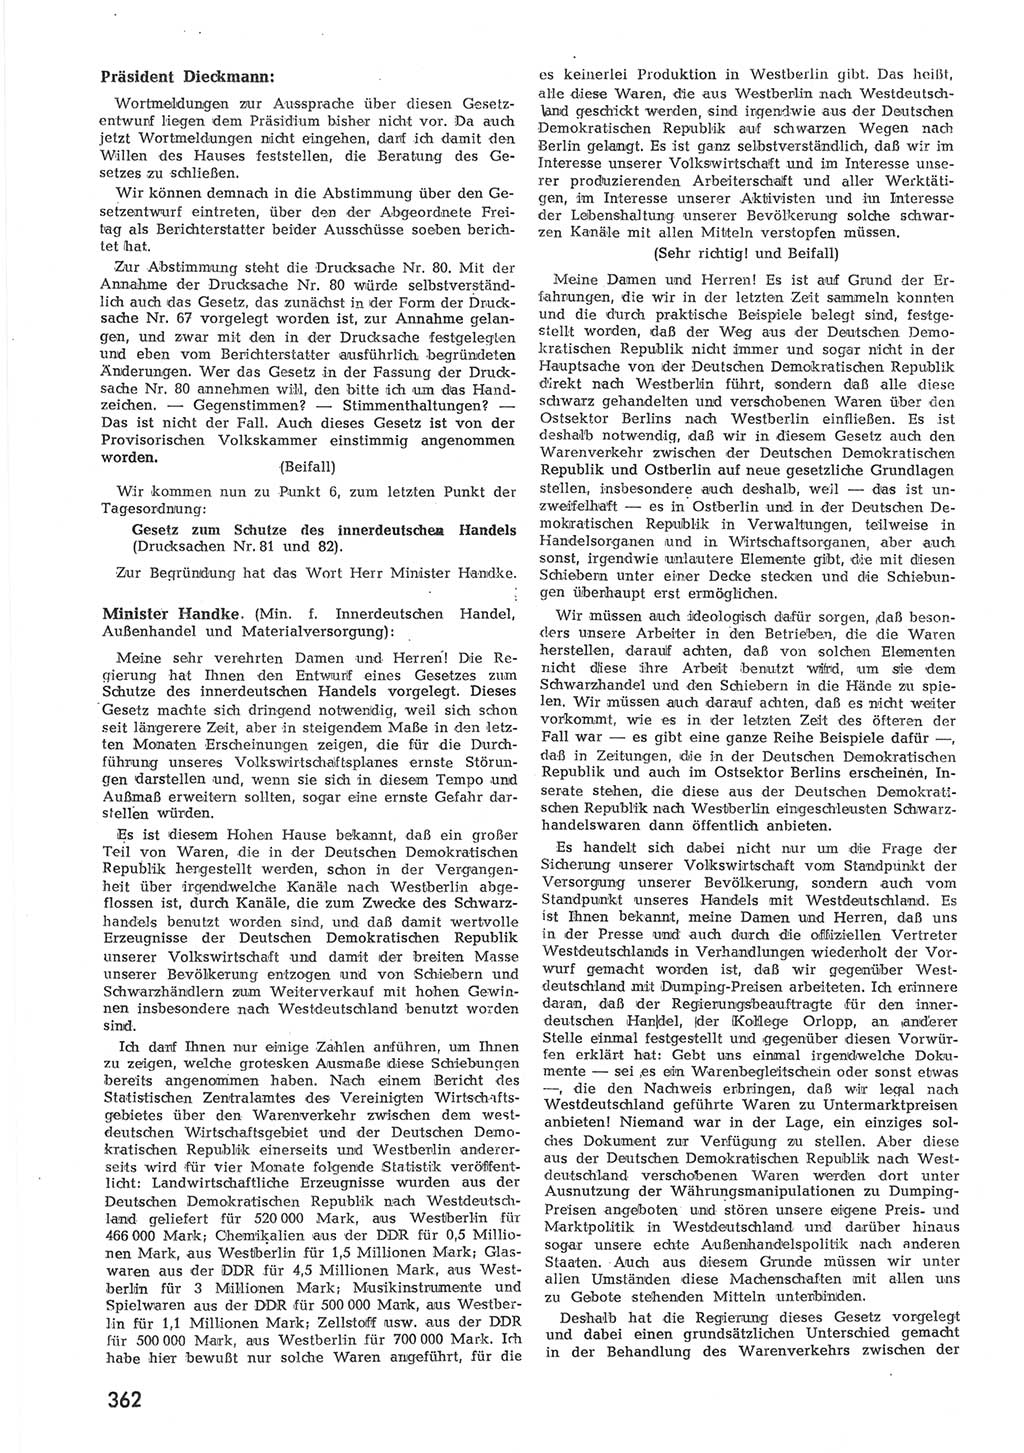 Provisorische Volkskammer (VK) der Deutschen Demokratischen Republik (DDR) 1949-1950, Dokument 378 (Prov. VK DDR 1949-1950, Dok. 378)